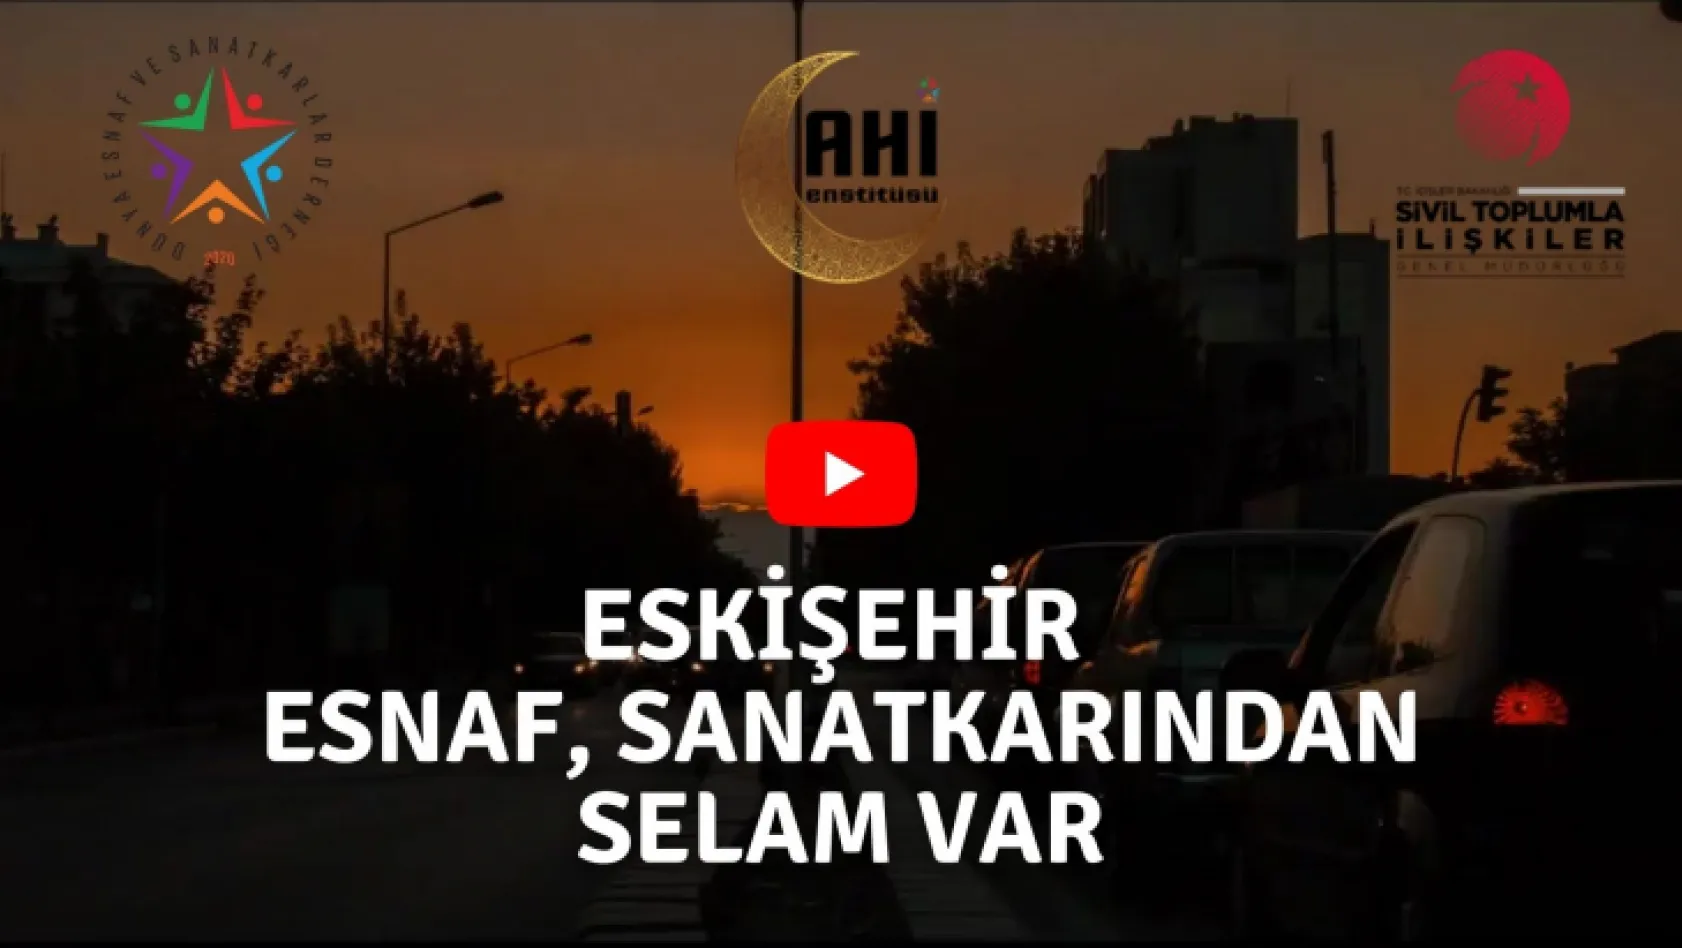 Ahi Enstitüsü Eskişehir Projesinin Tanıtım Videosu Yayınlandı